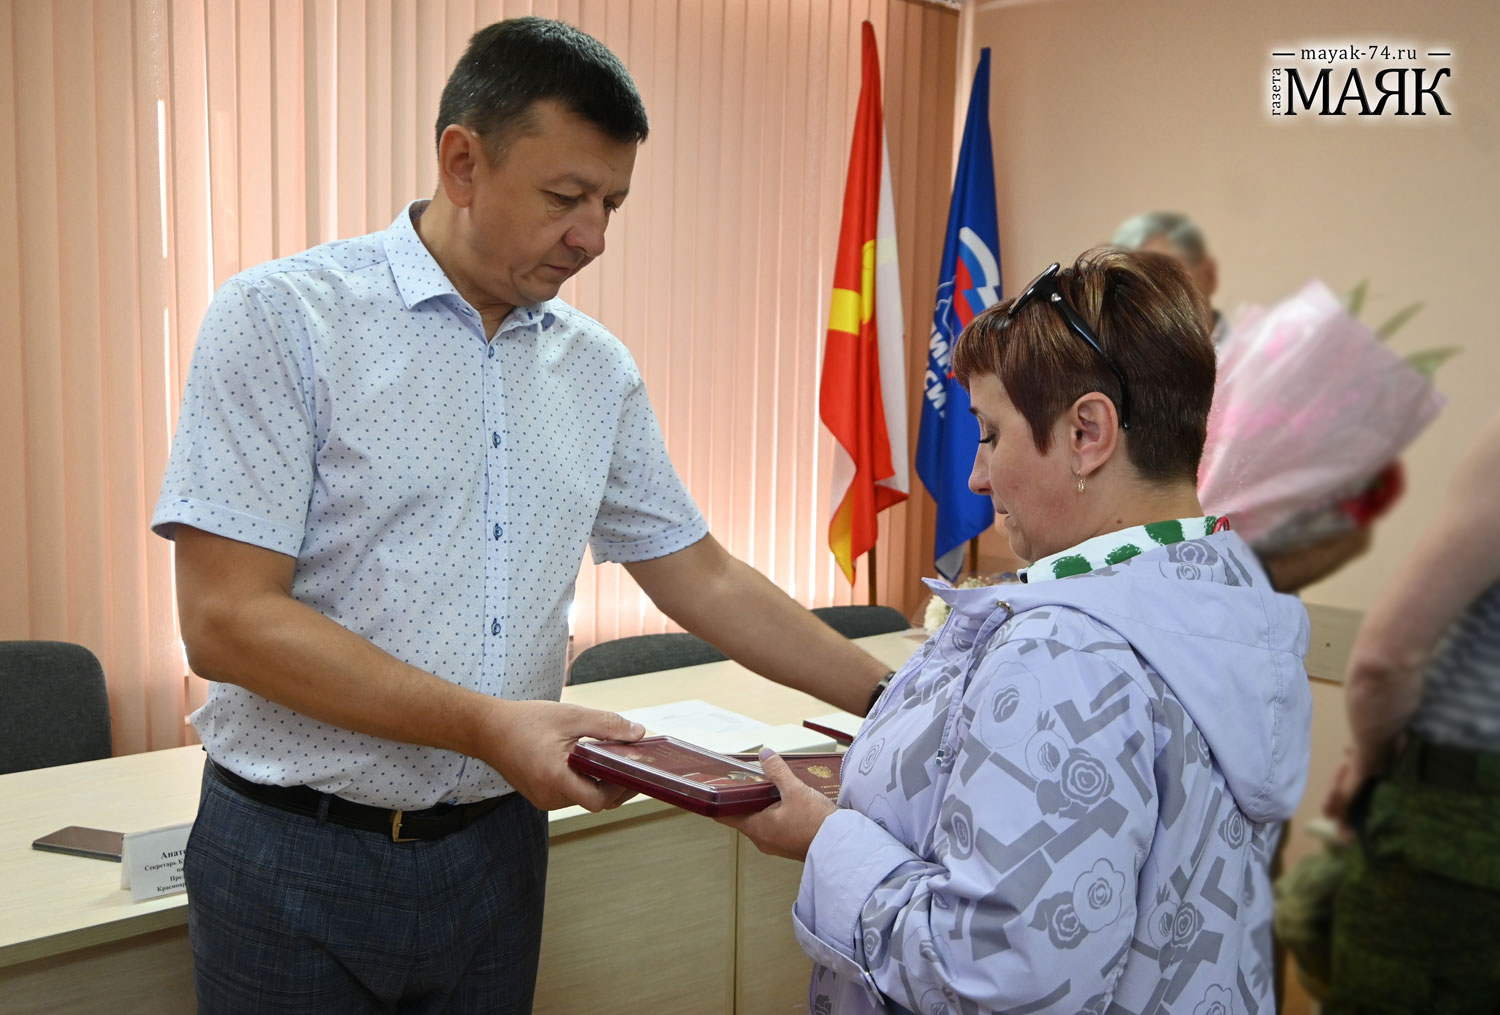 Участникам спецоперации из Красноармейского района присвоены государственные награды